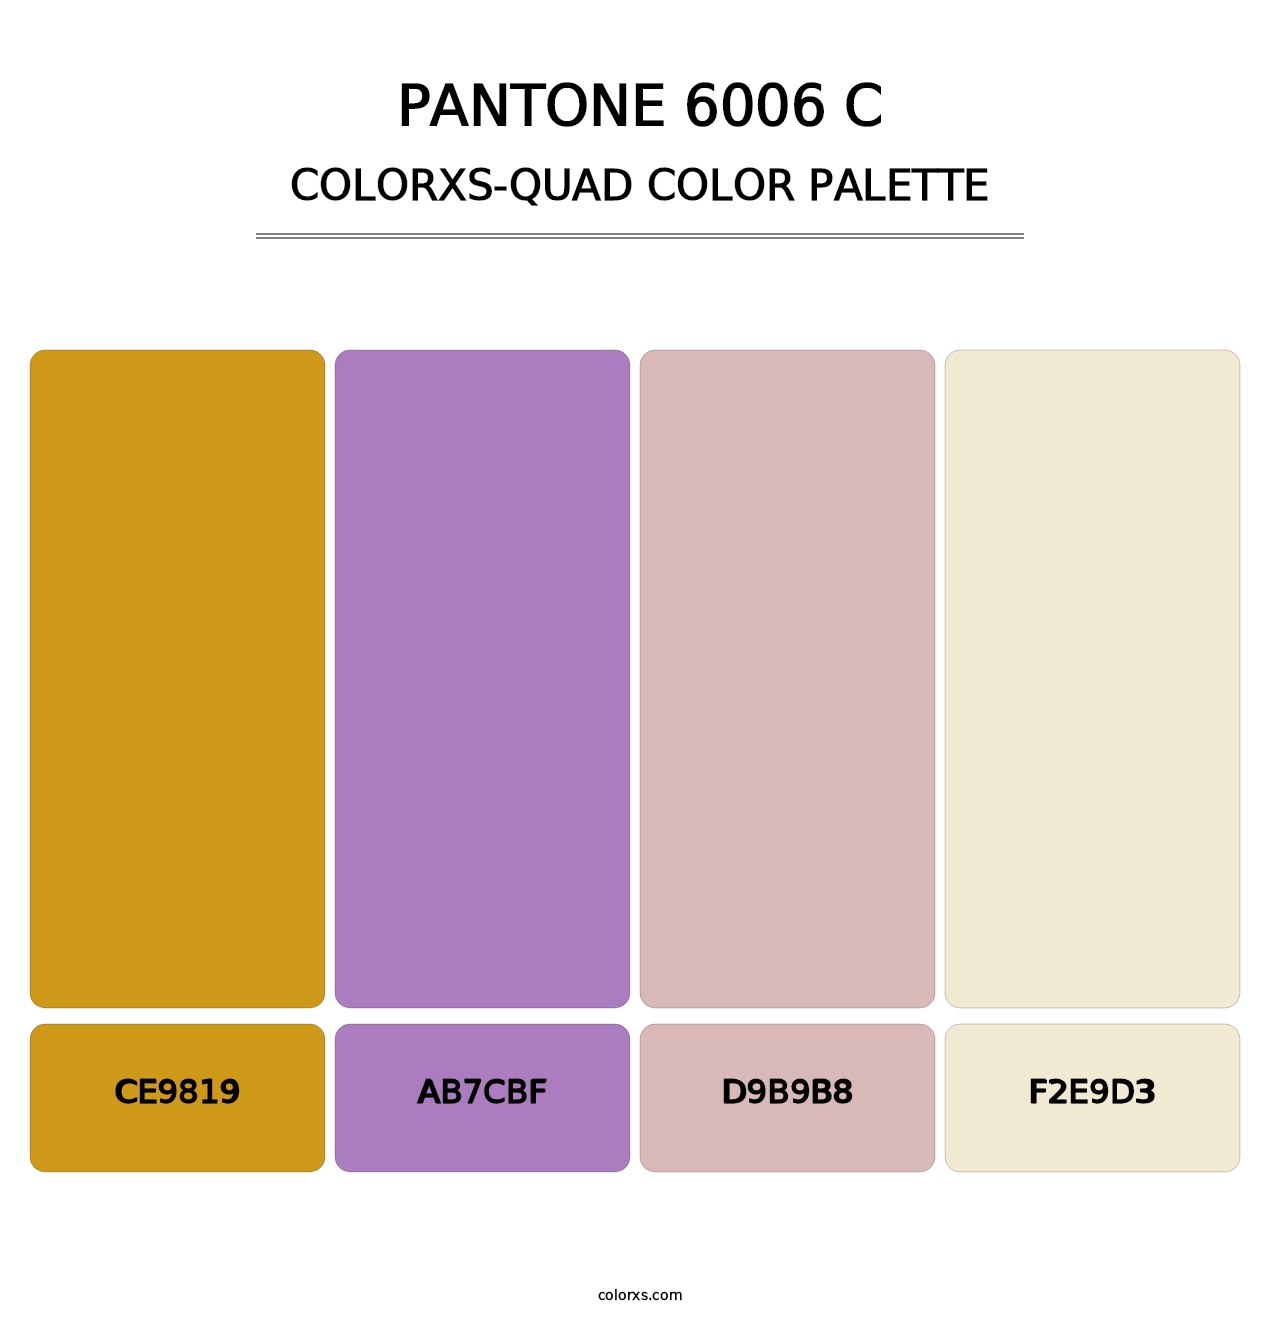 PANTONE 6006 C - Colorxs Quad Palette